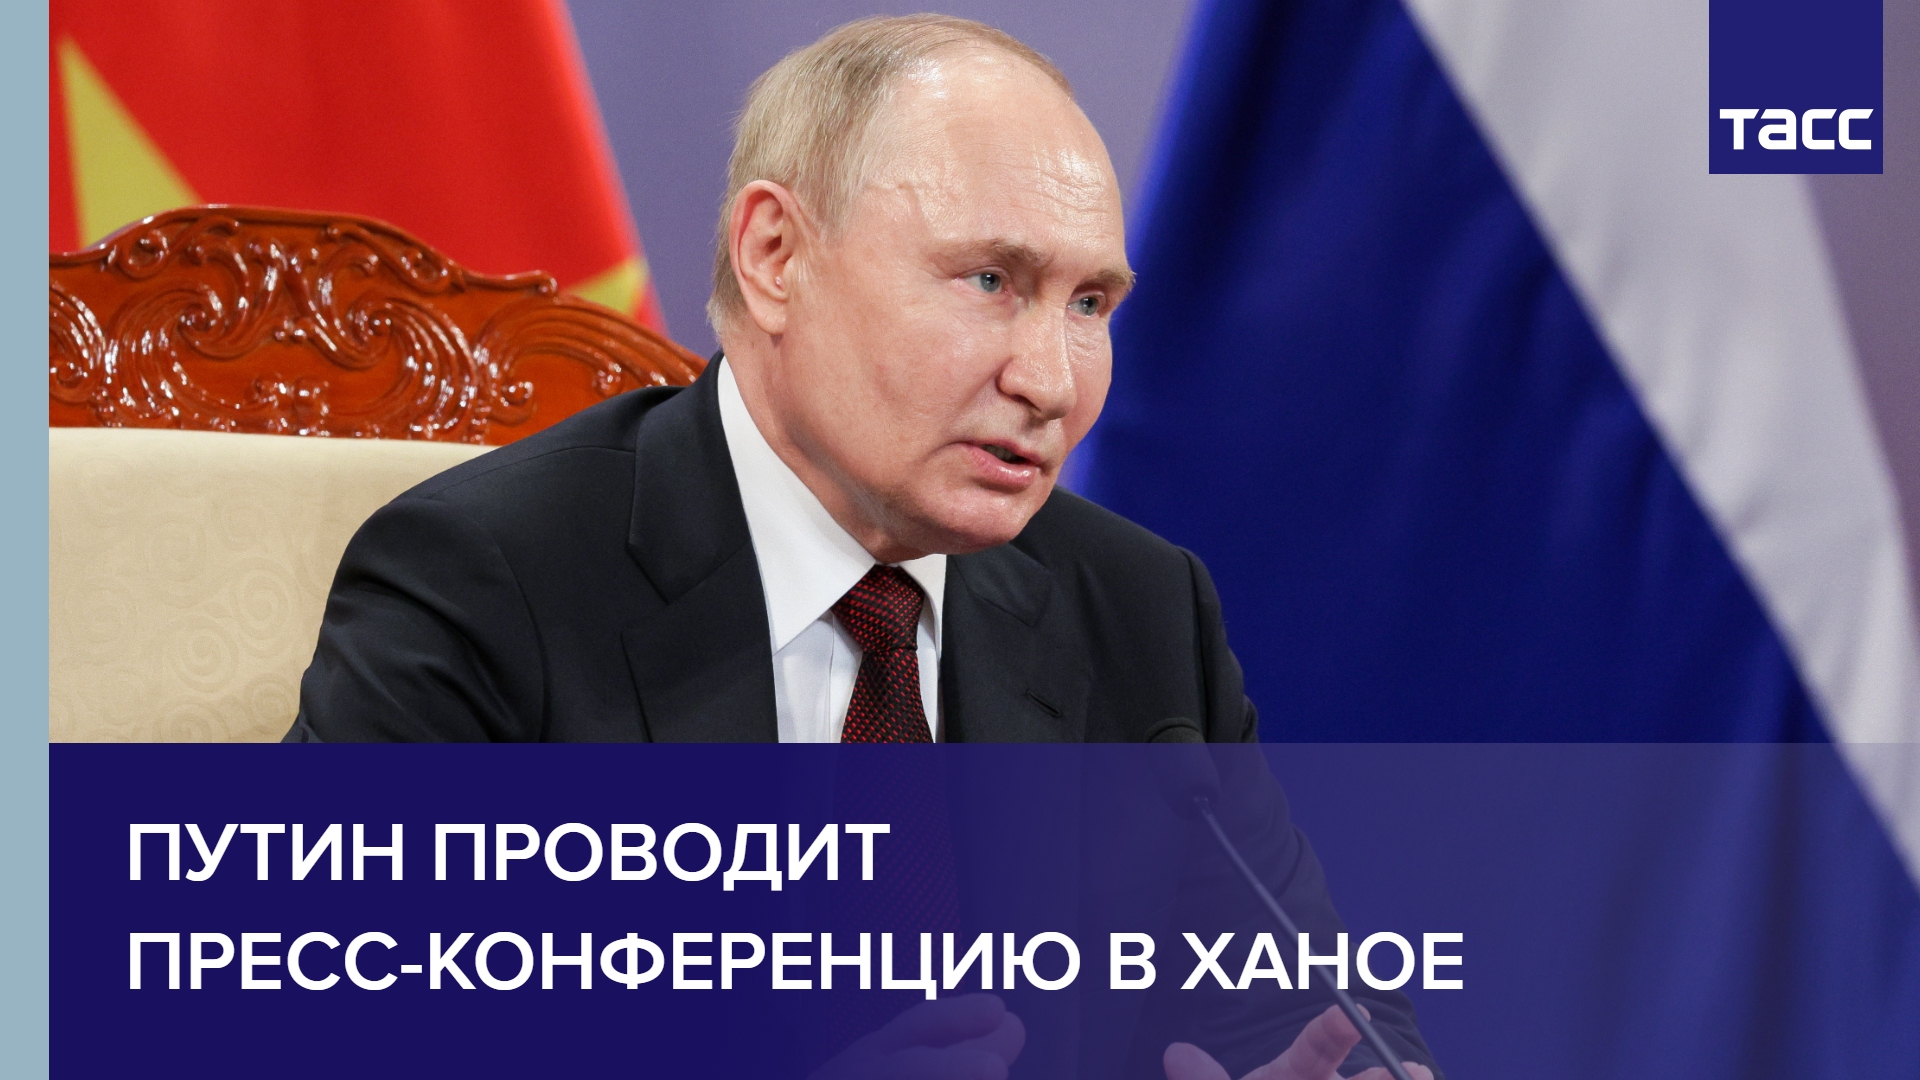 Путин проводит пресс-конференцию в Ханое